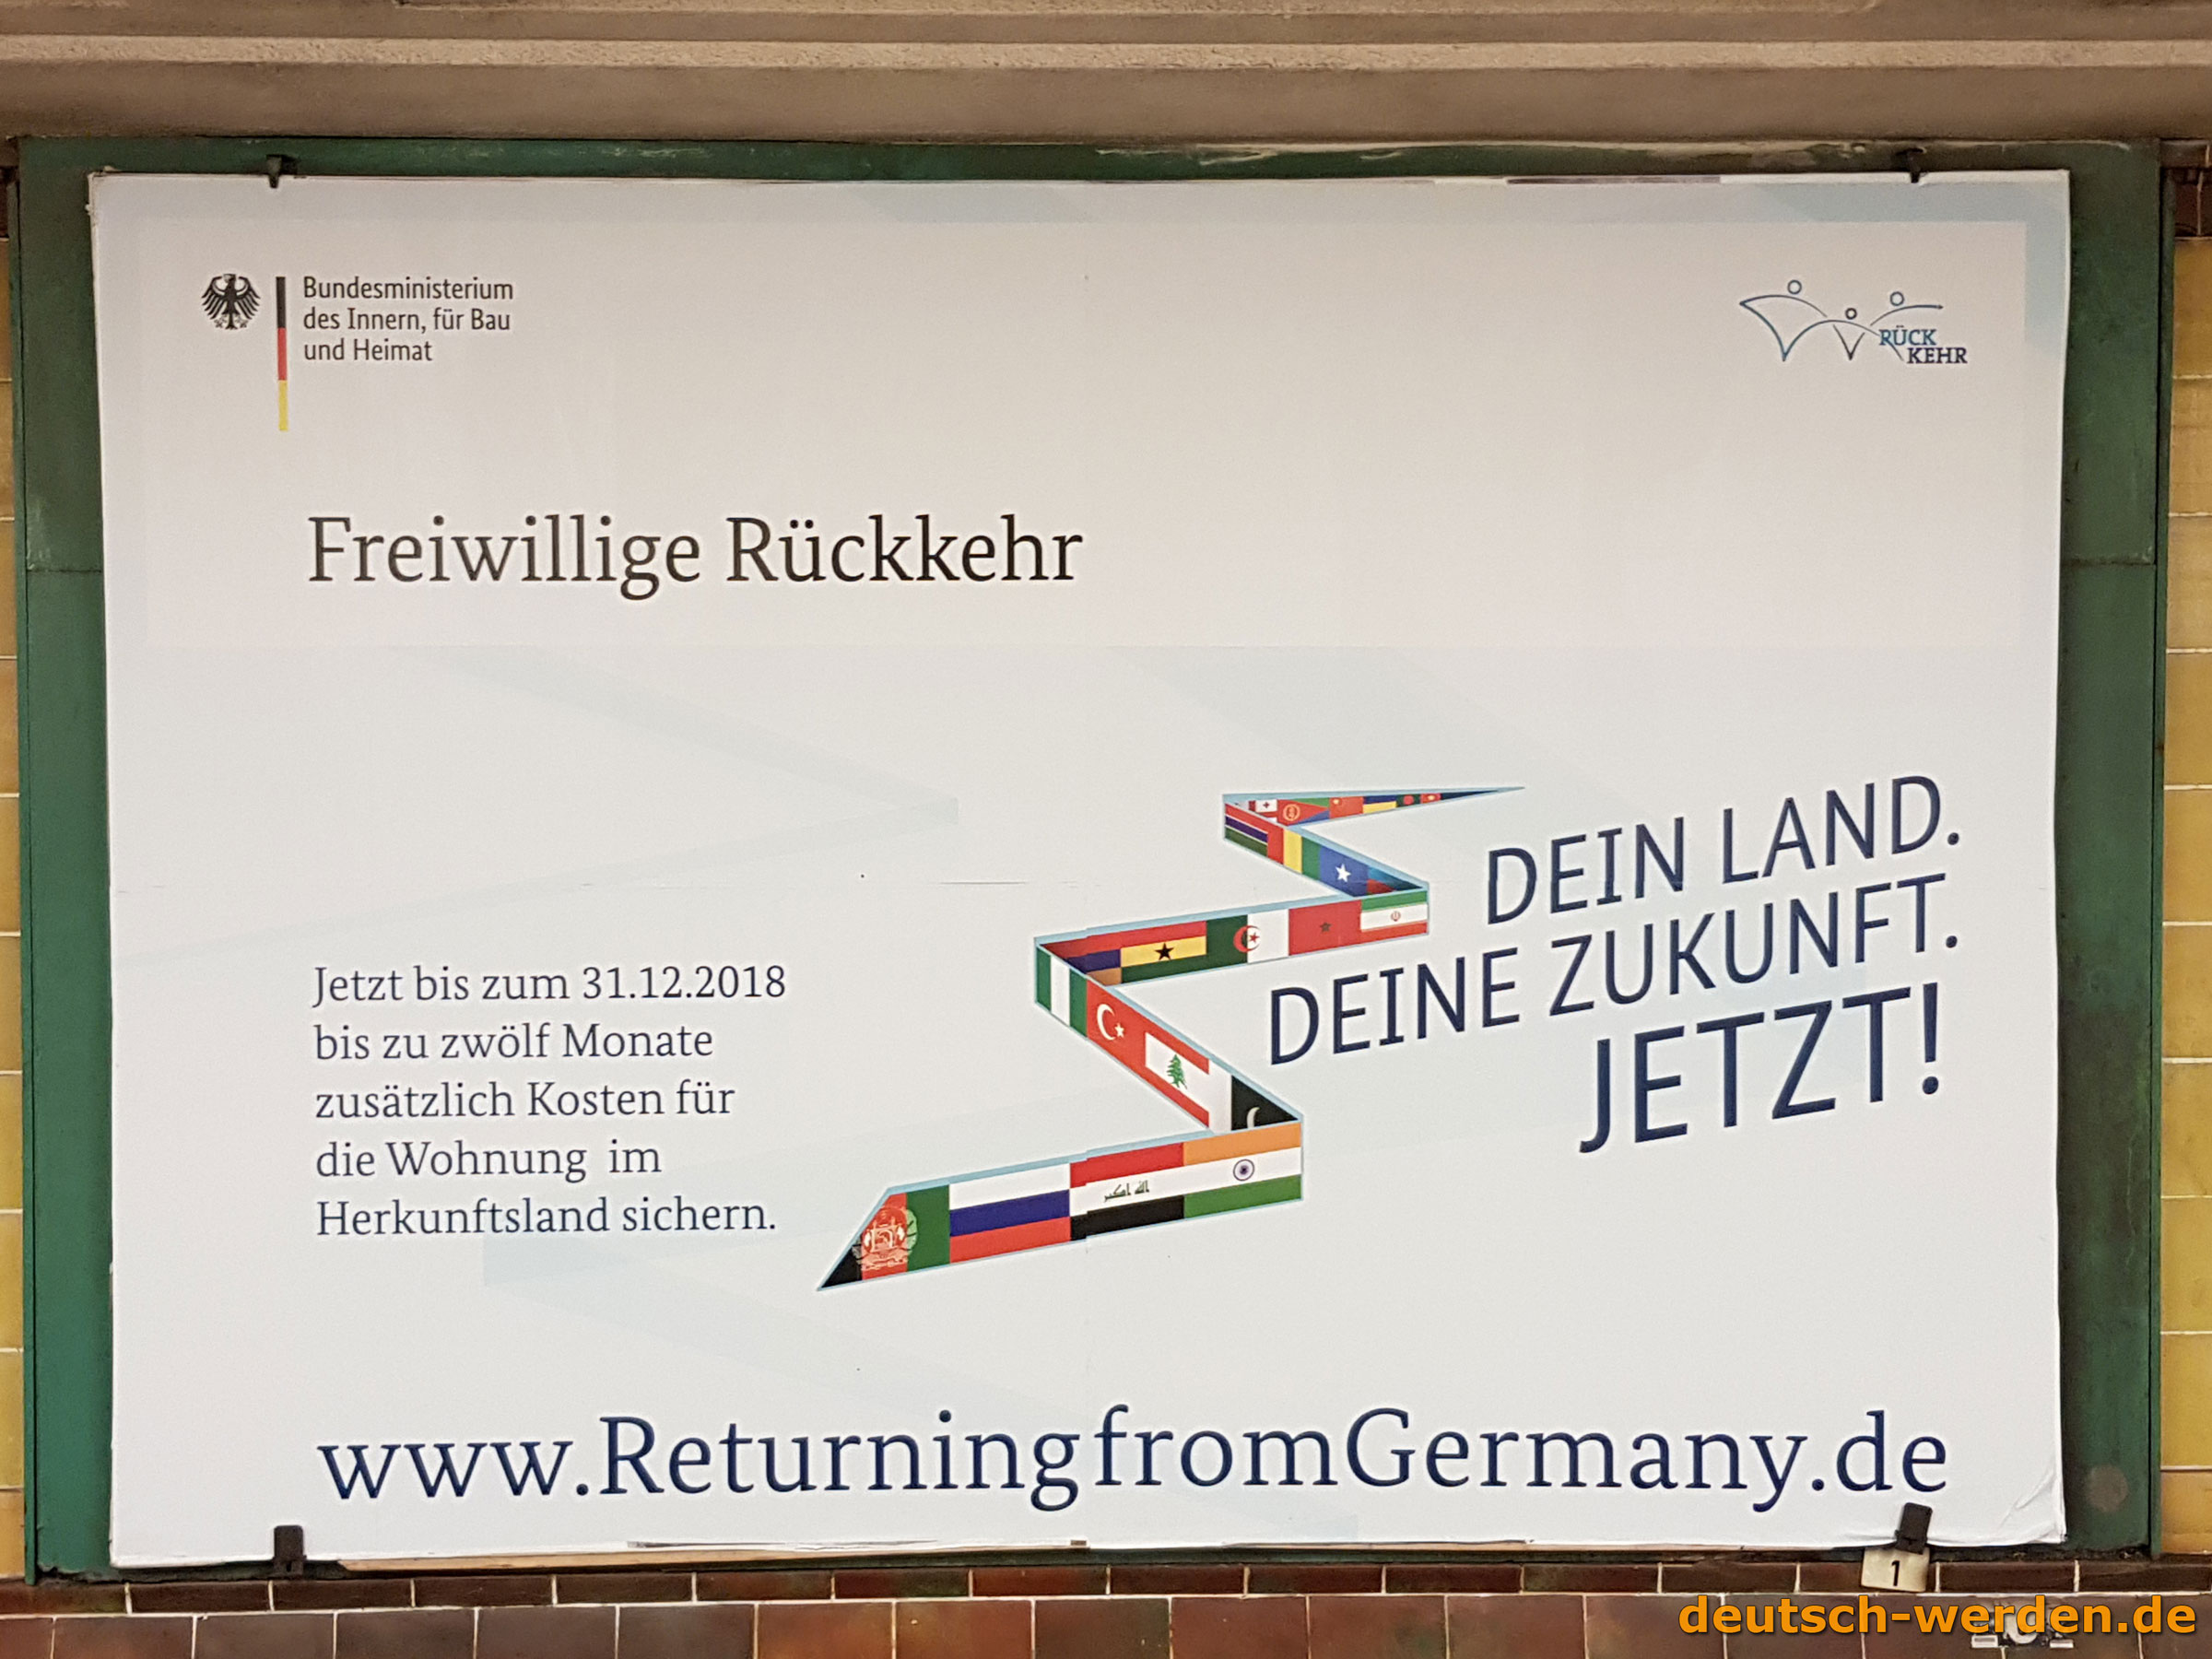 Returning from Germany - Geld für freiwillige Rückkehr